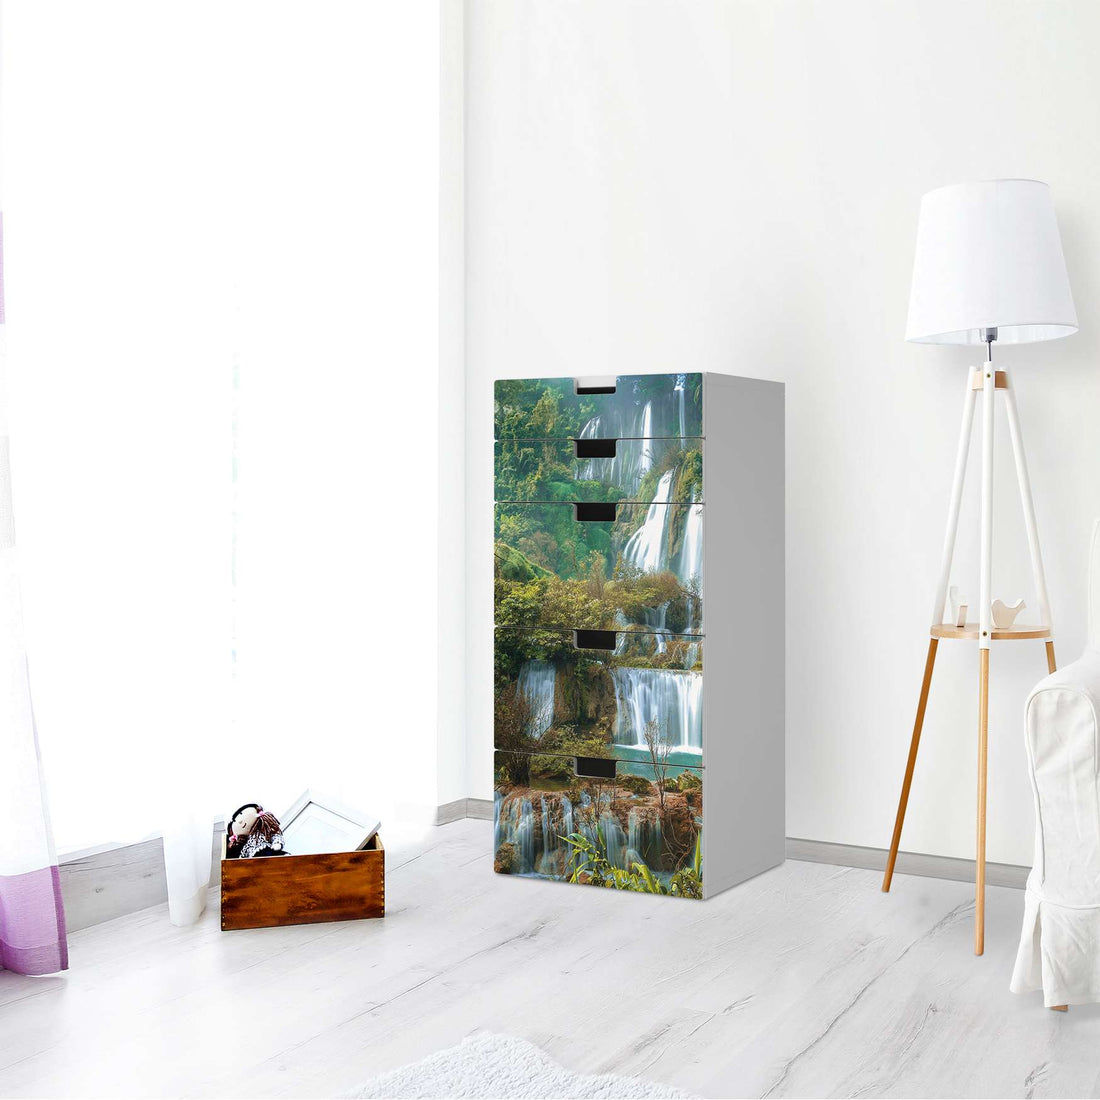 Möbel Klebefolie Rainforest - IKEA Stuva Kommode - 5 Schubladen - Wohnzimmer